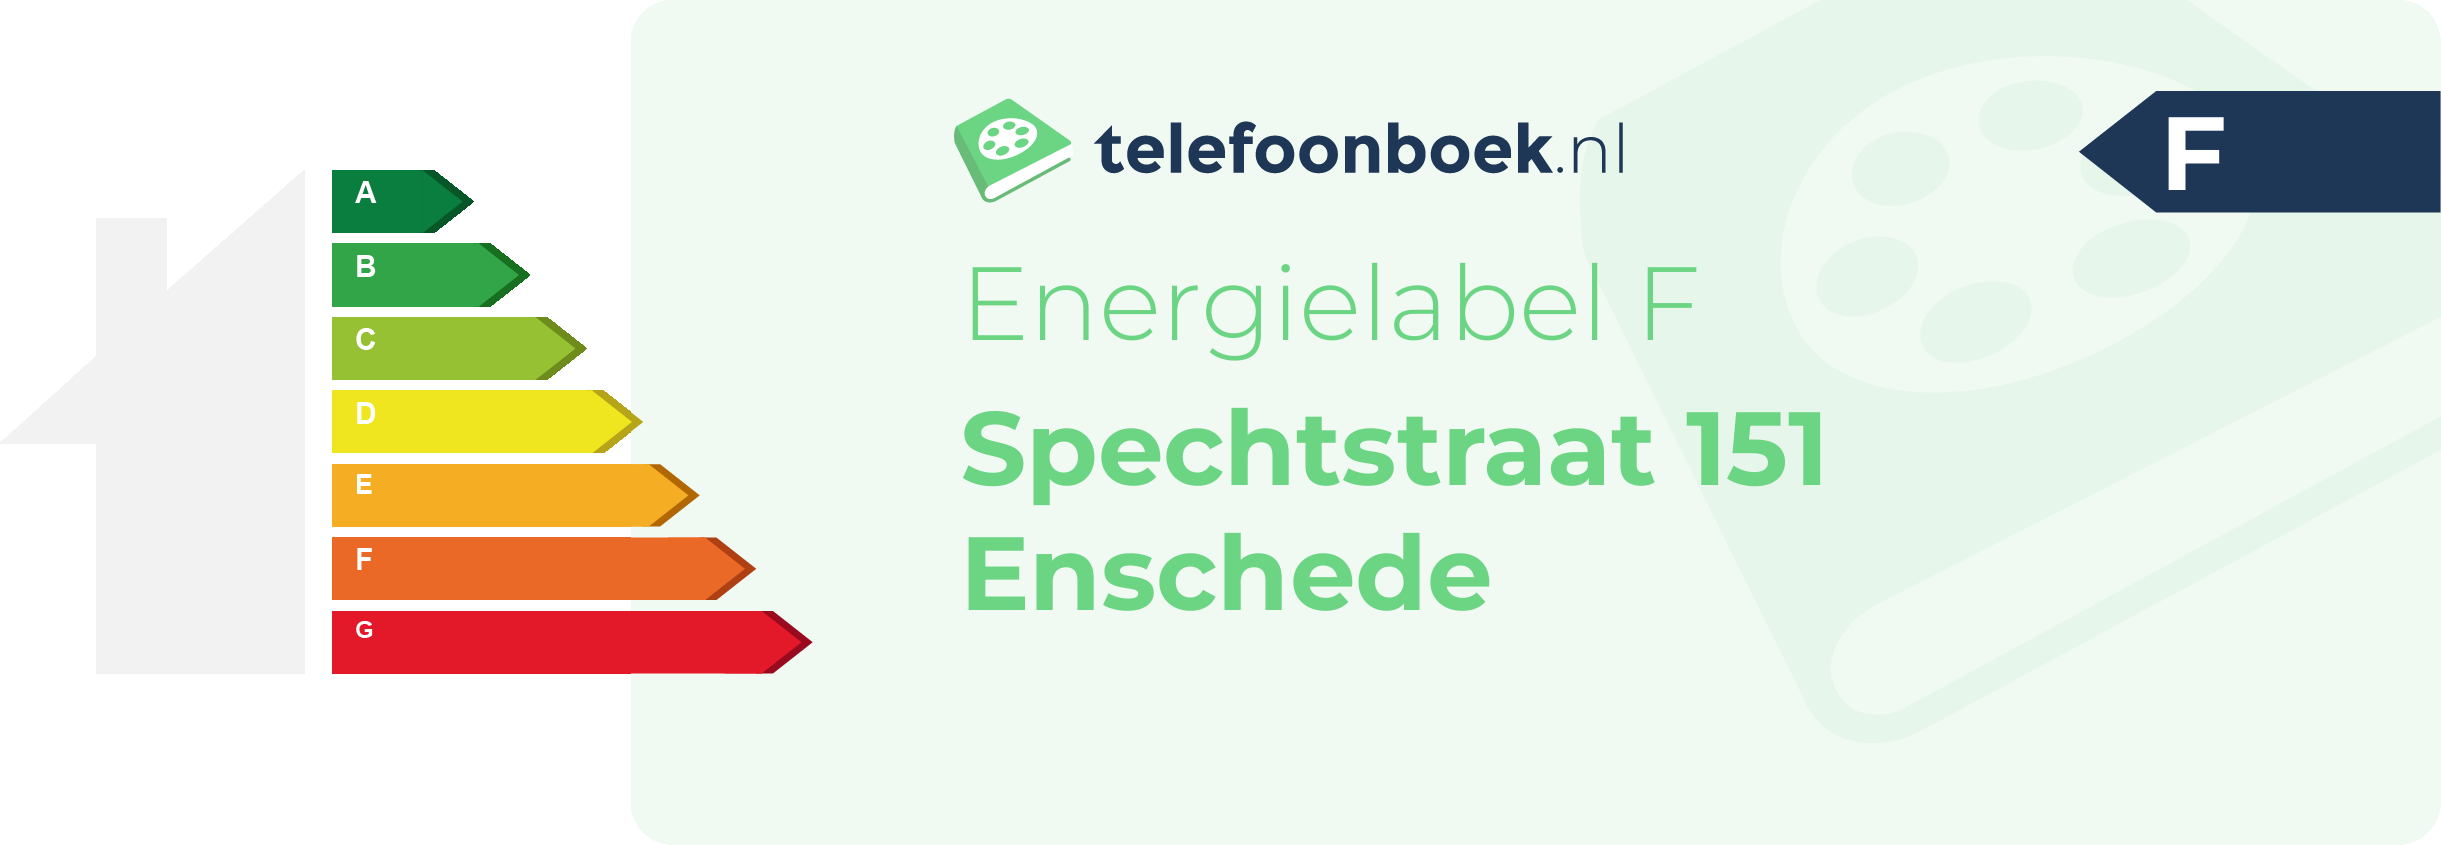 Energielabel Spechtstraat 151 Enschede